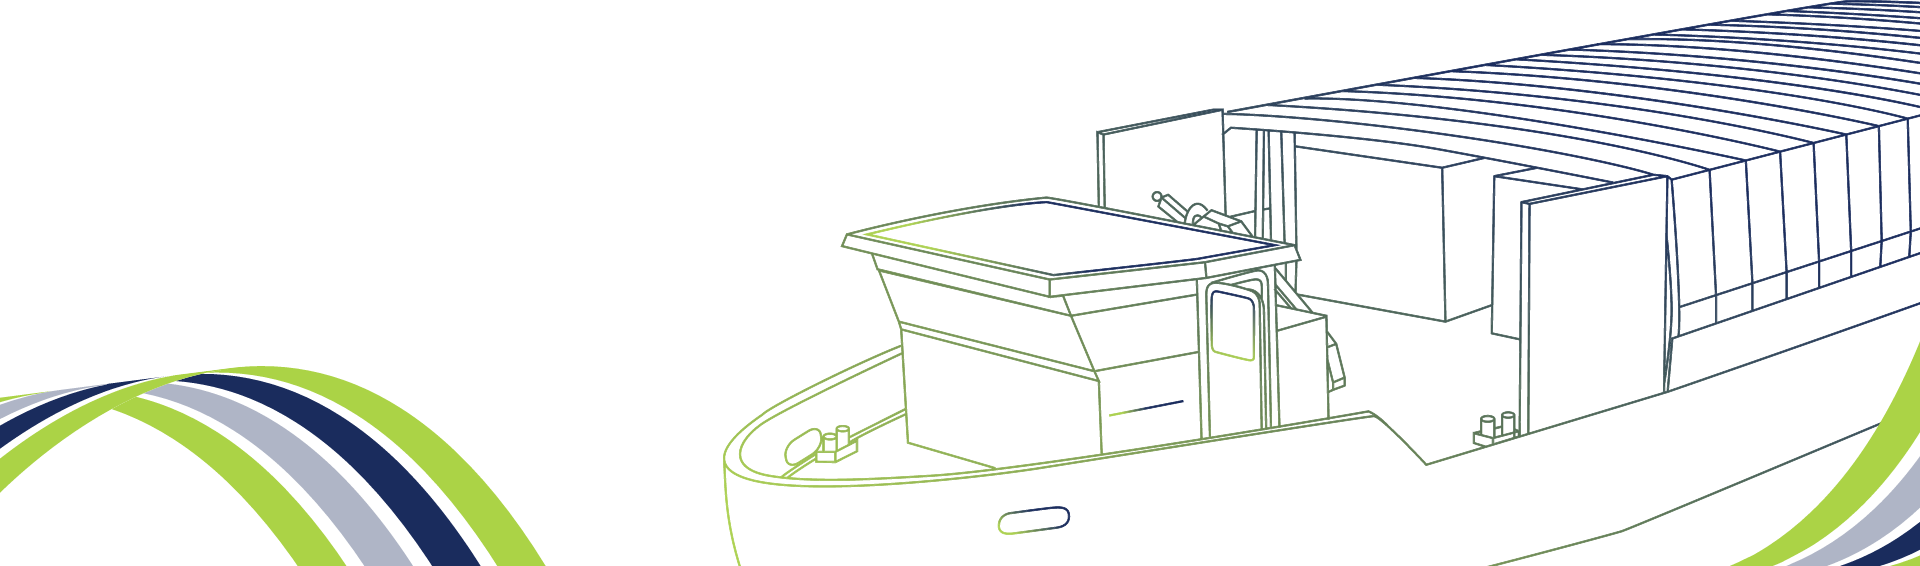 Illustration du bateau d'écofluv en dessin avec des bandes de couleurs vertes et bleues